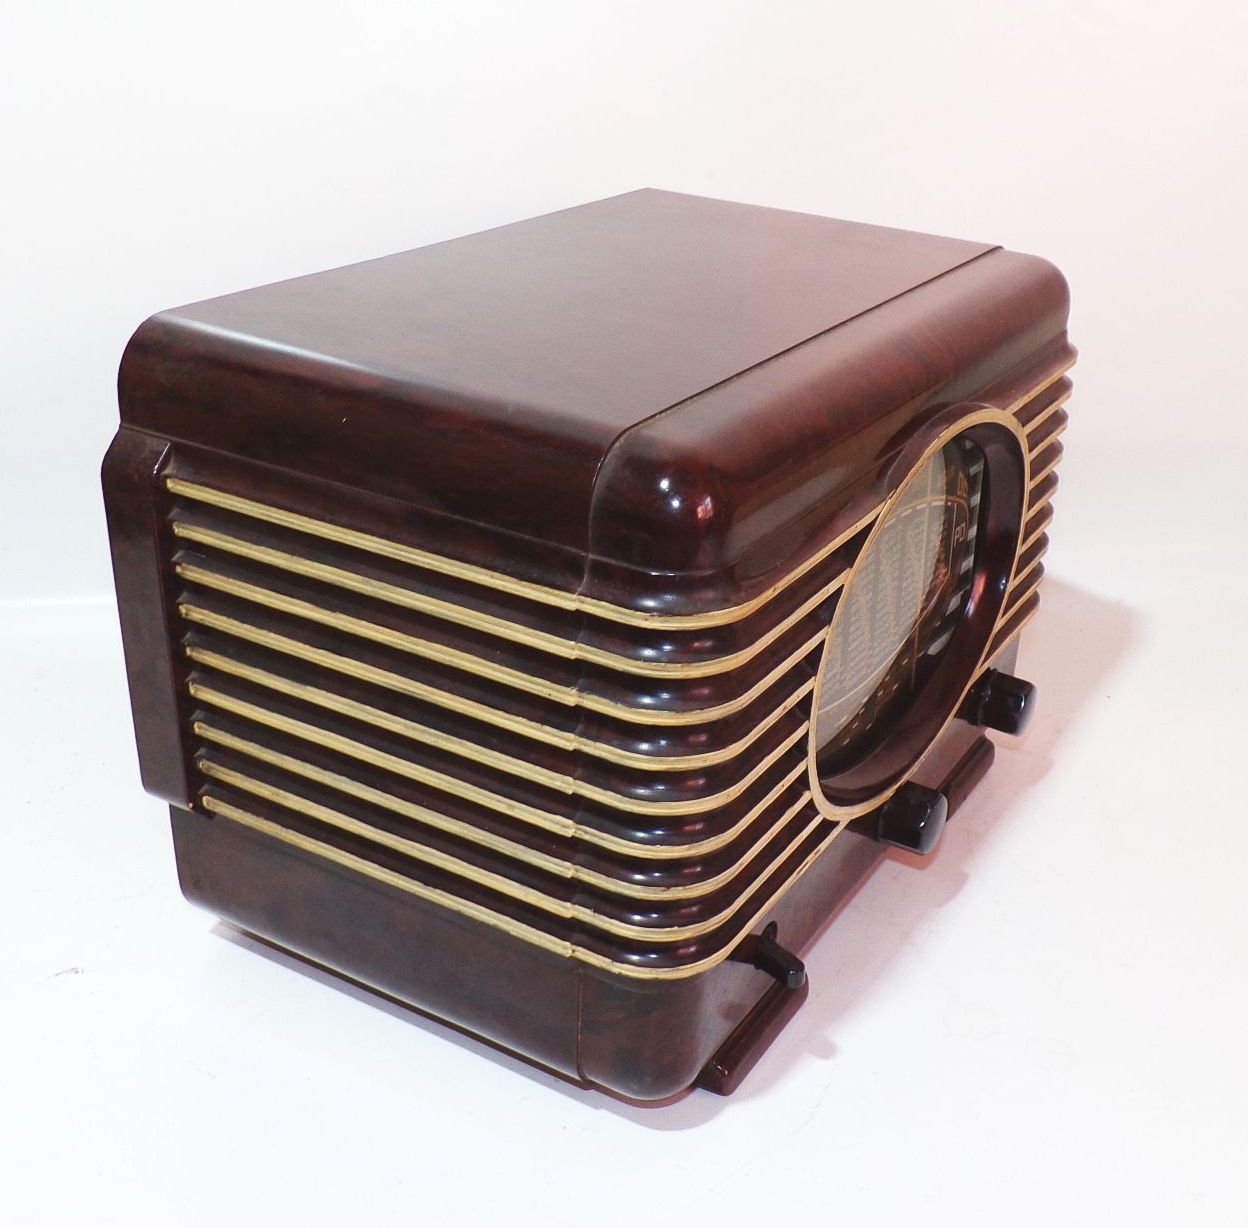 Radialva Röhrenradio Bakelit Radio Frankreich um 1940 vintage deko